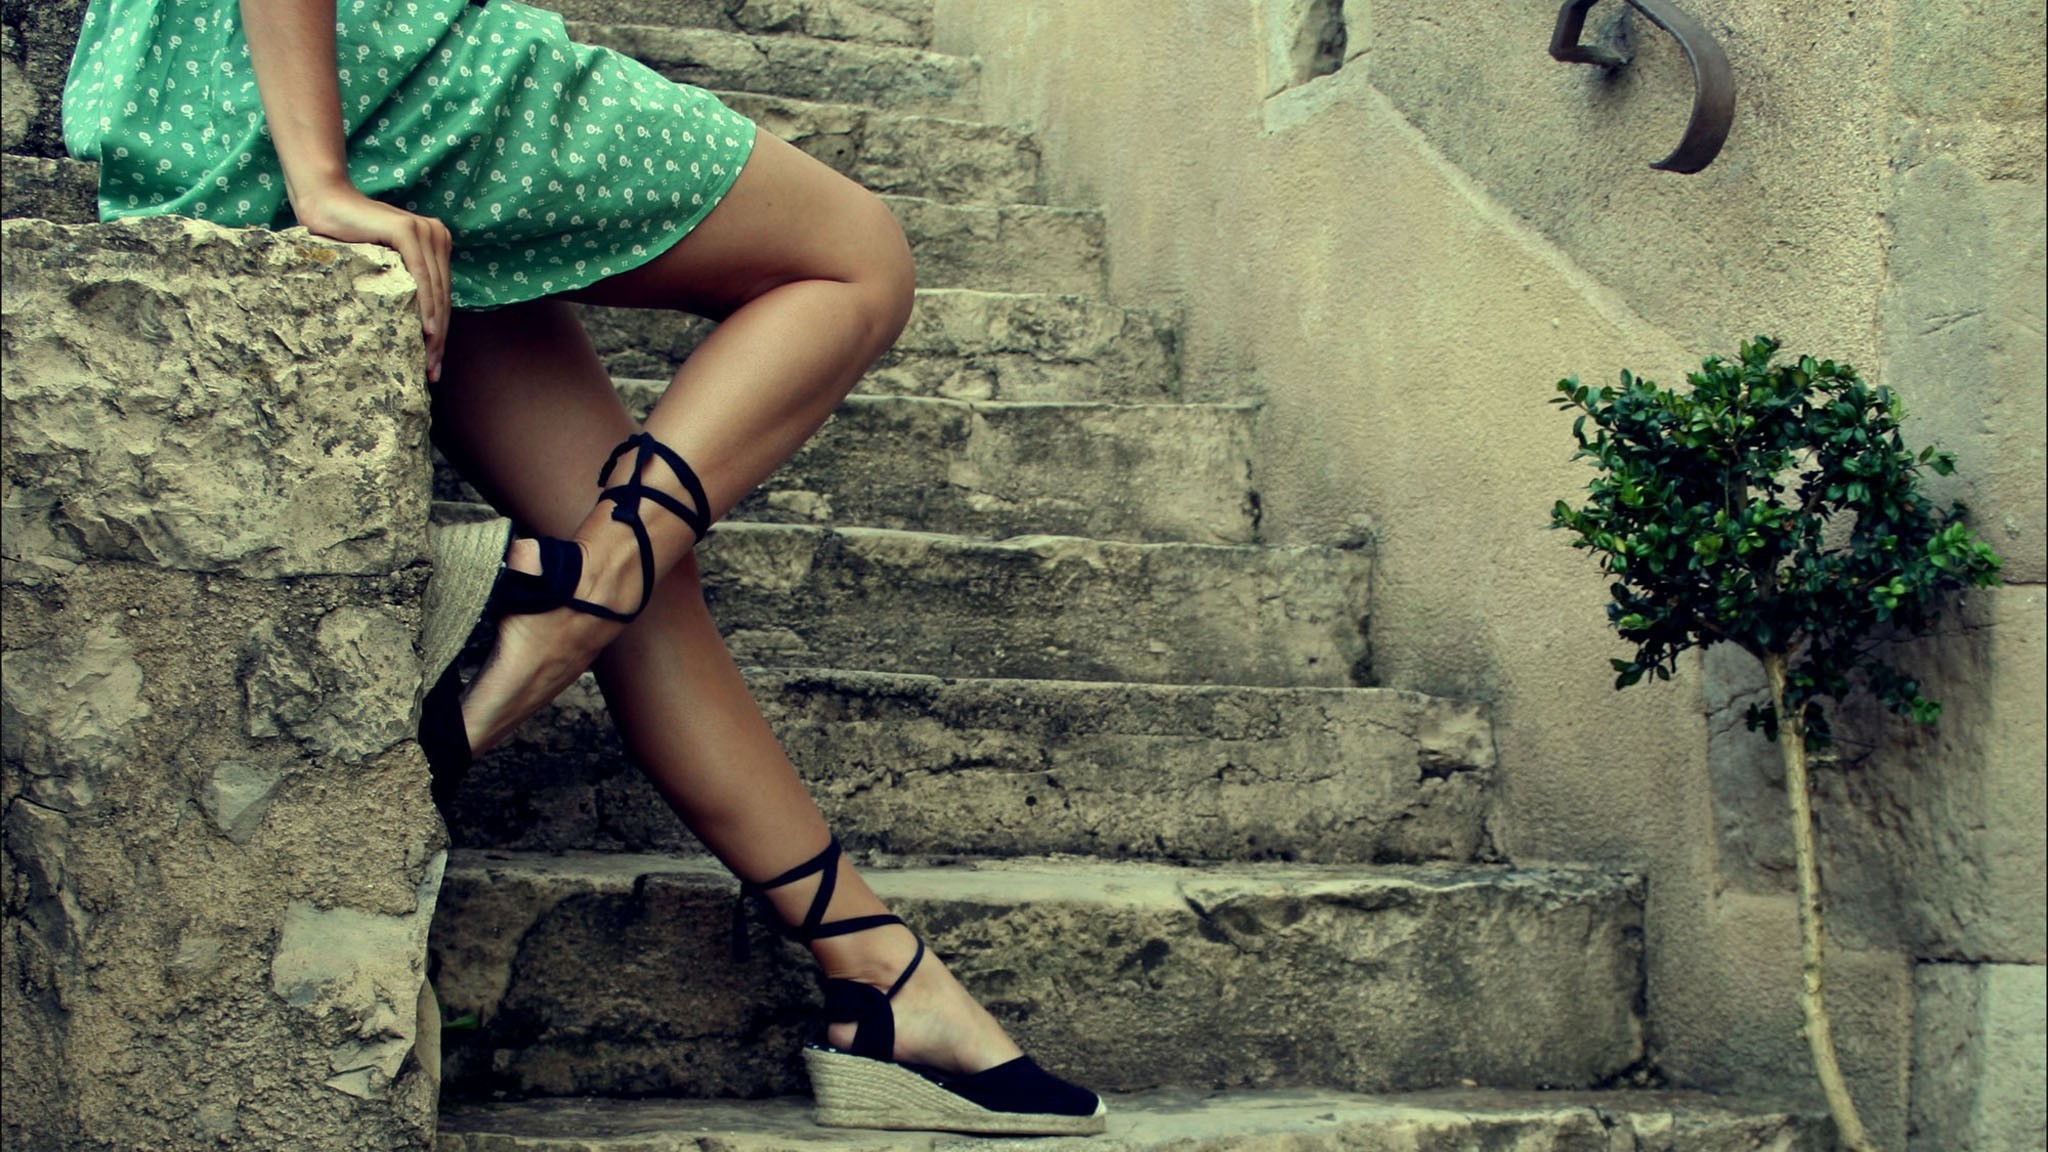 Women High Heels Dress Legs Stairs Wedge Shoes Green Dress Women Outdoors Model 2048x1152